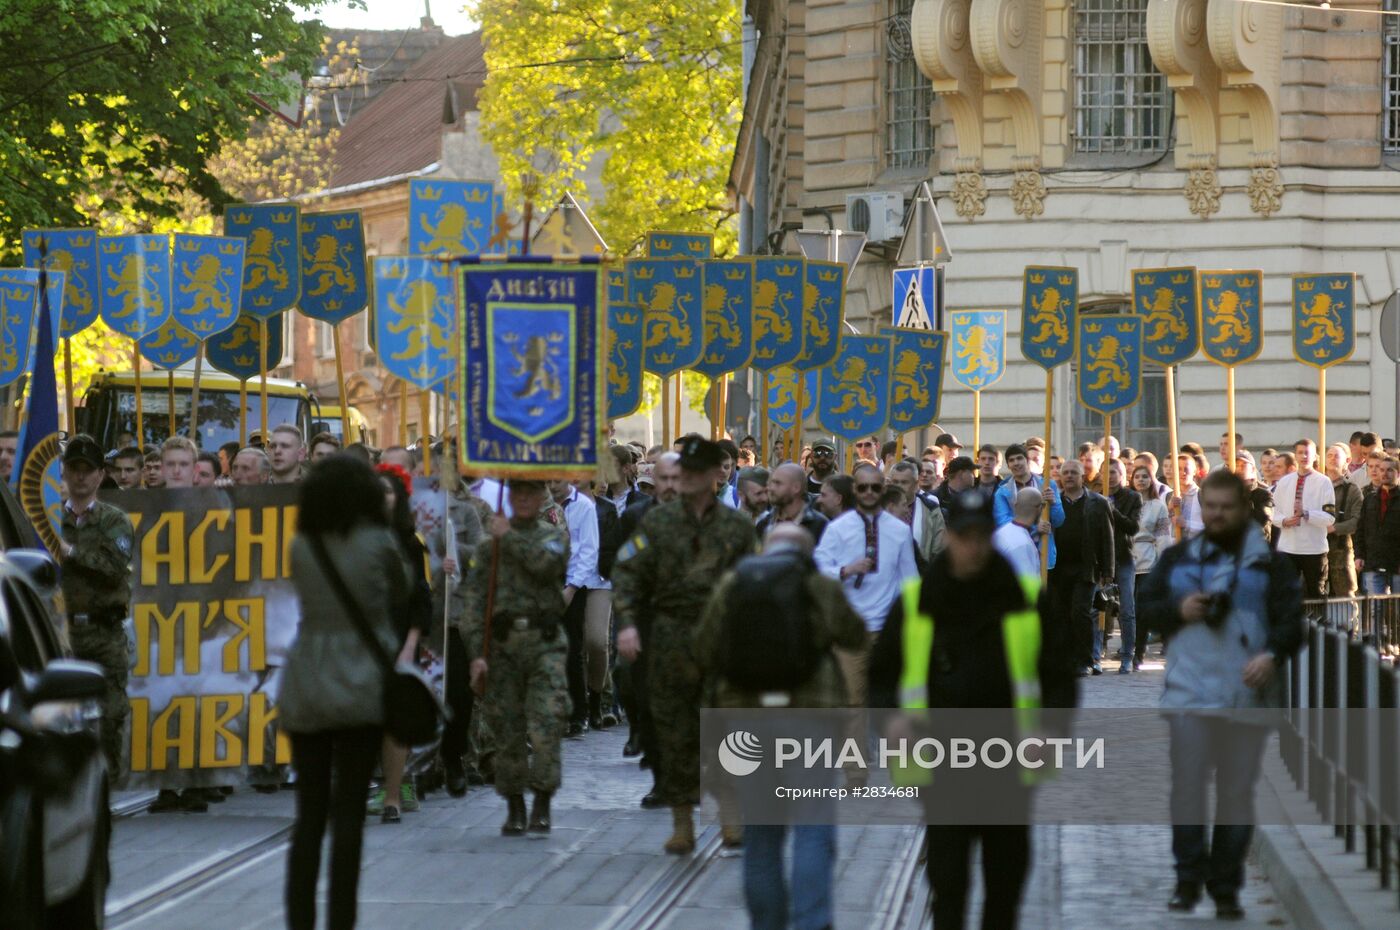 Шествие в годовщину создания дивизии СС "Галичина" во Львове